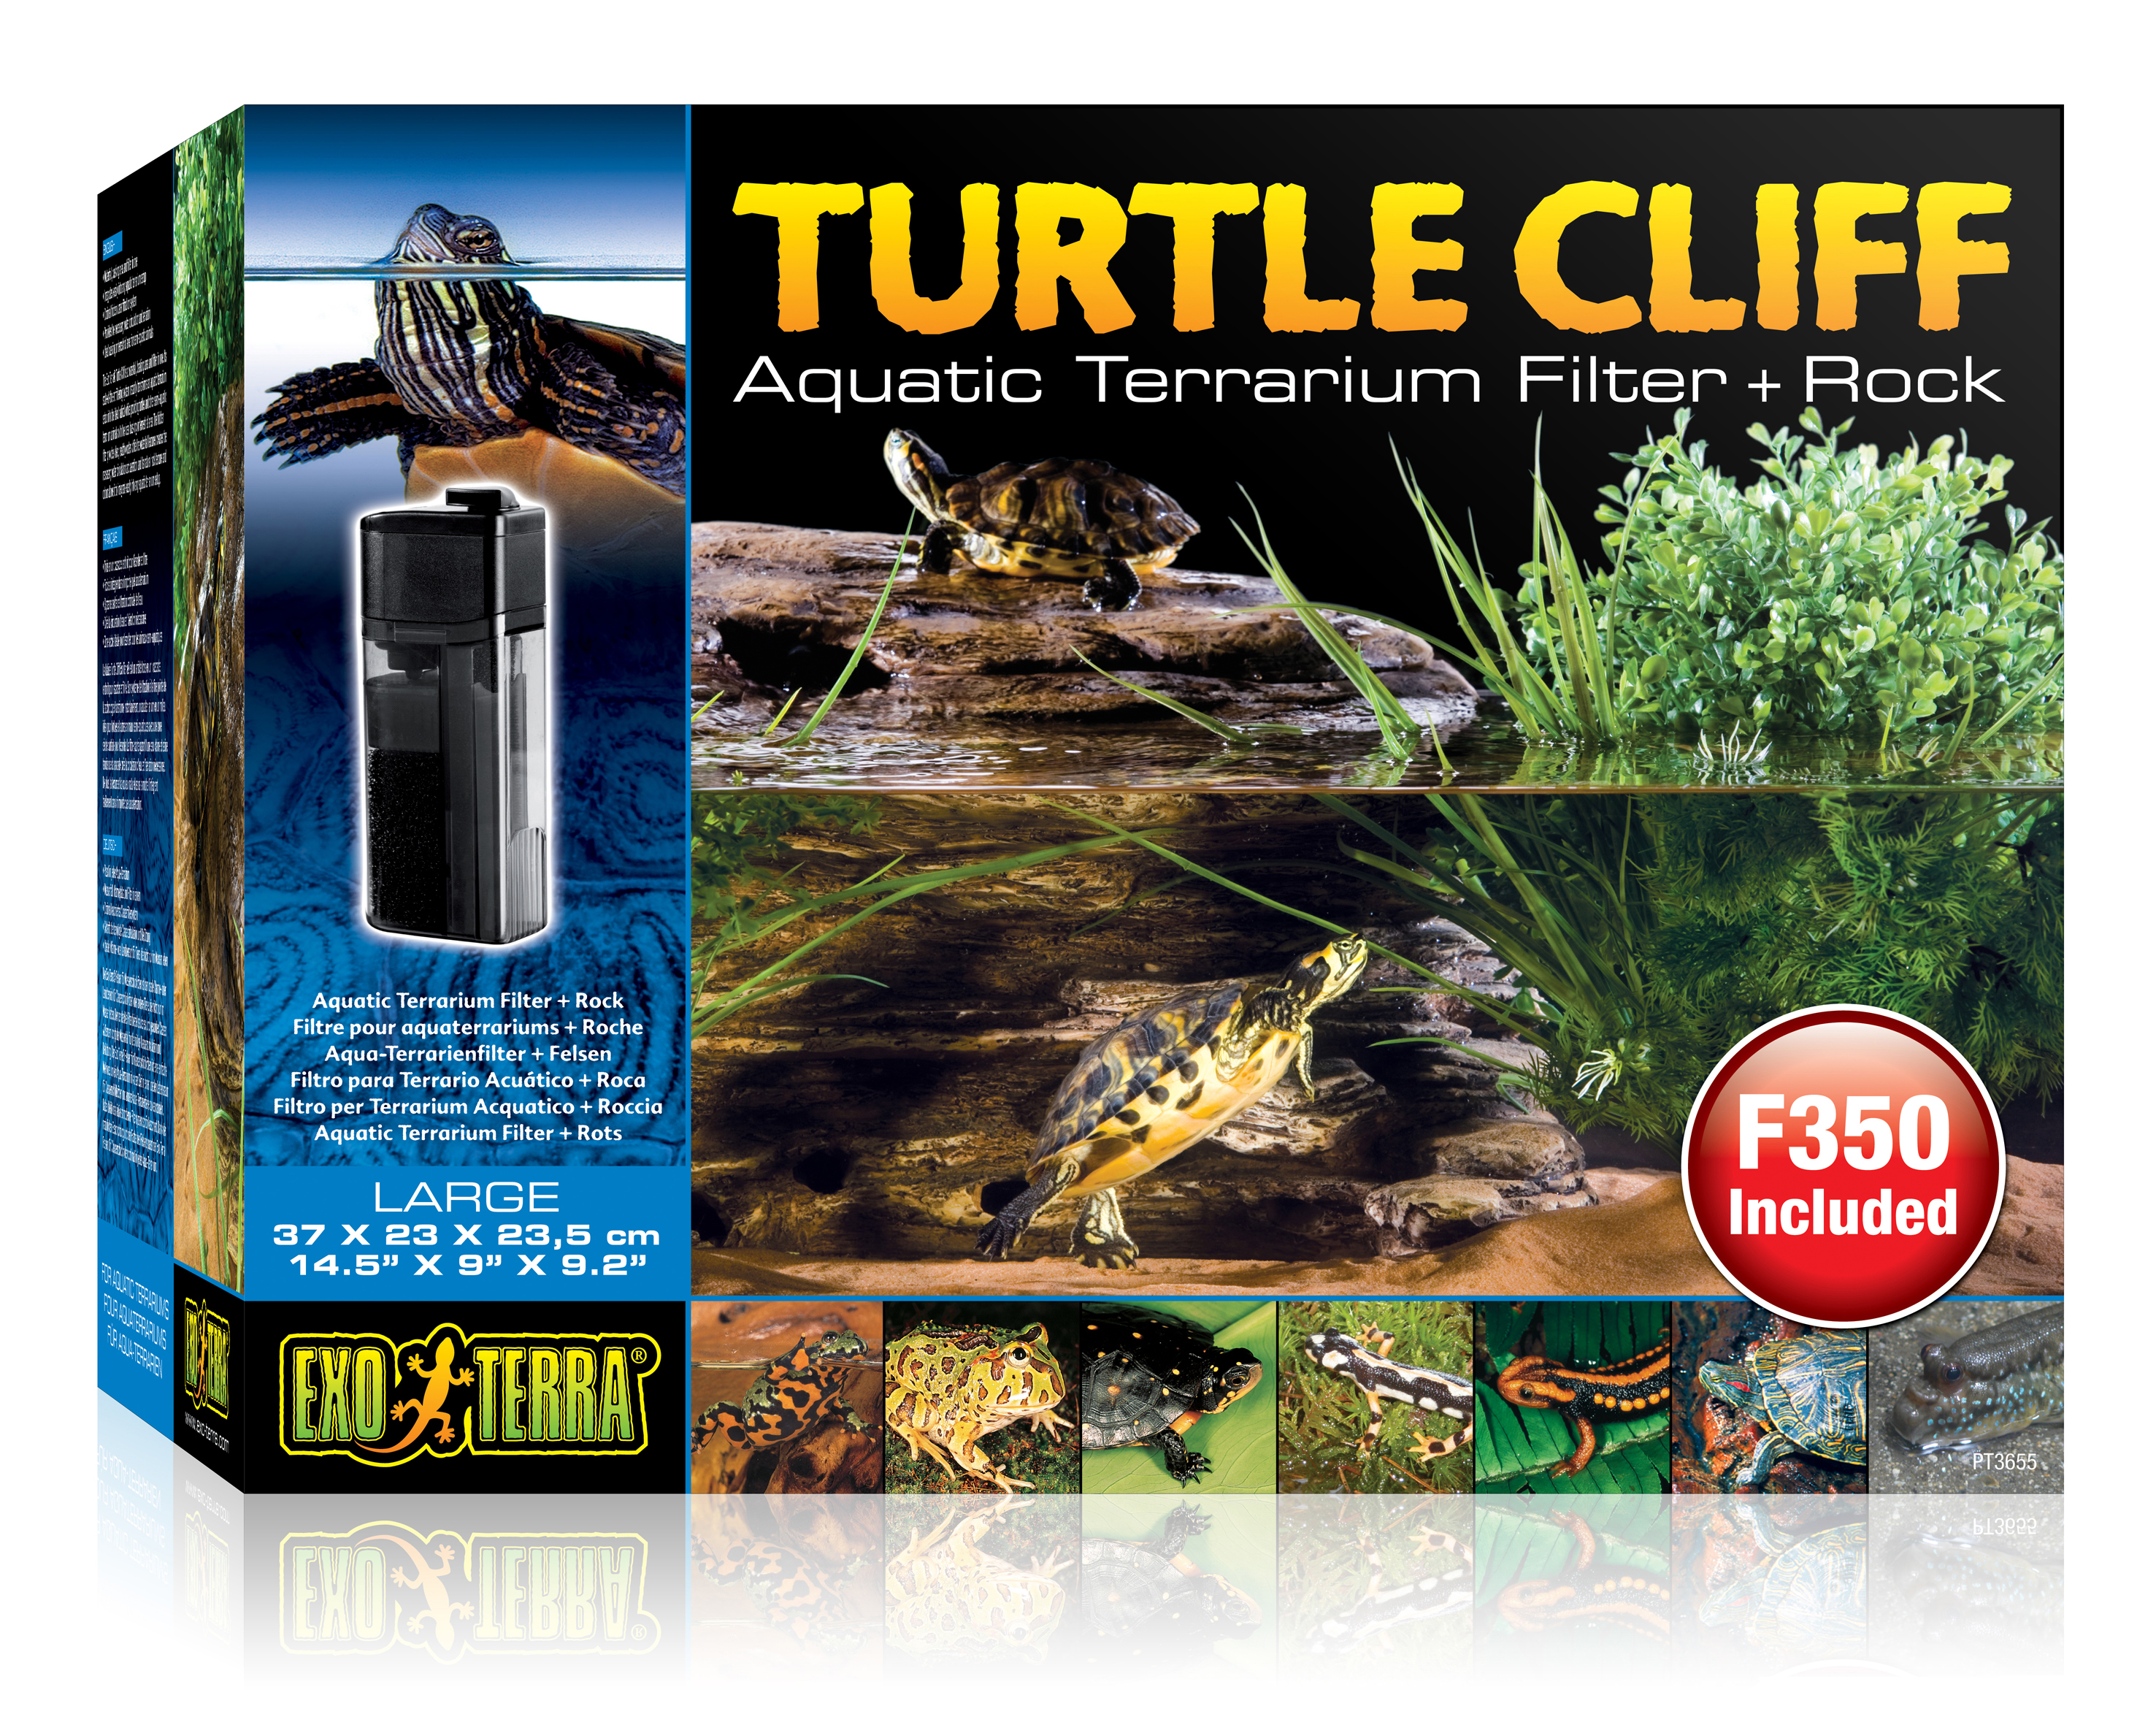 Ex turtle cliff terrarium met filter + rots - <Product shot>